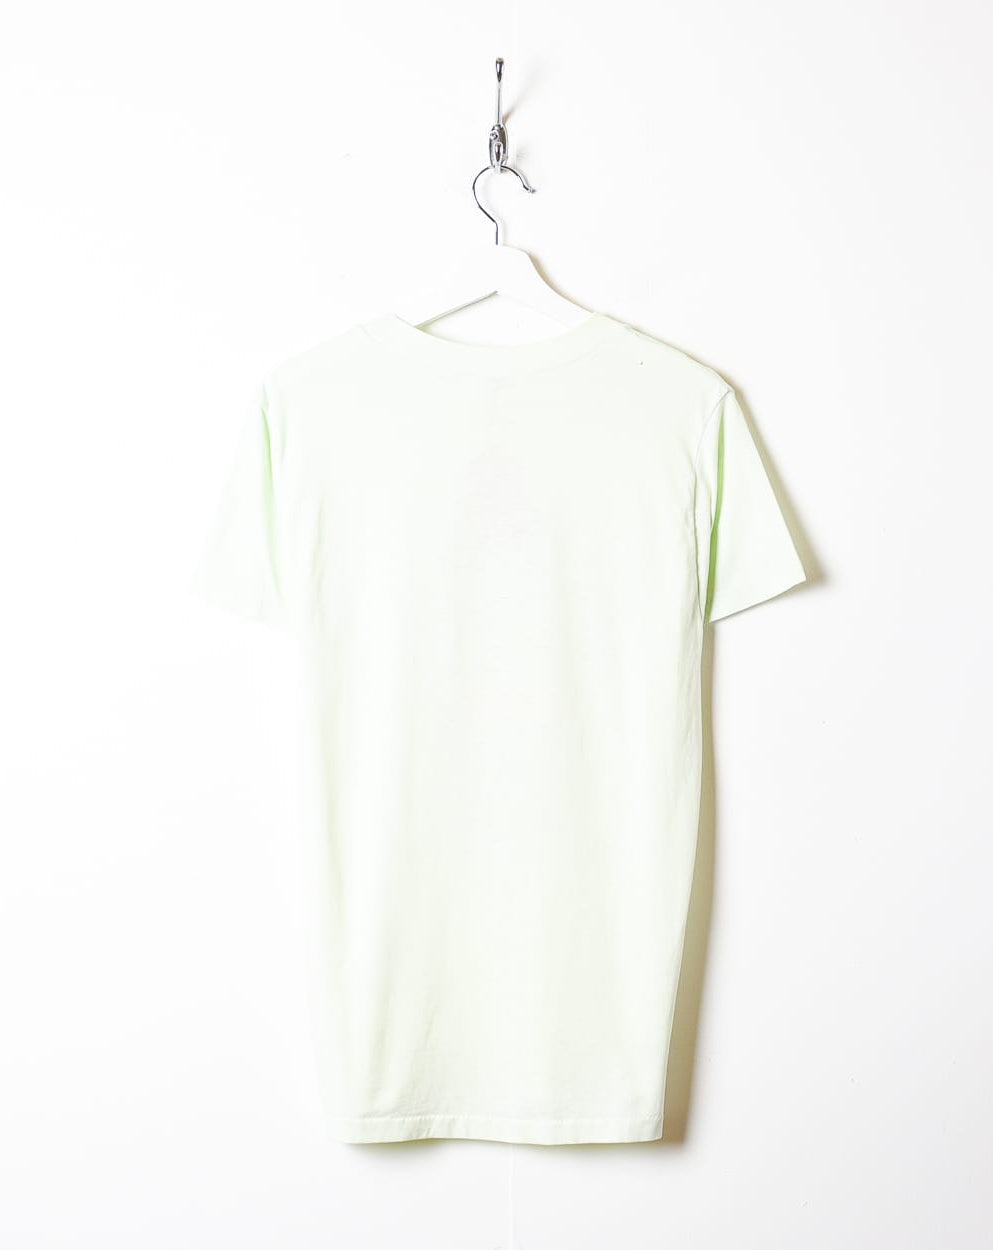 Green Branson Vacation Single Stitch T-Shirt - Small